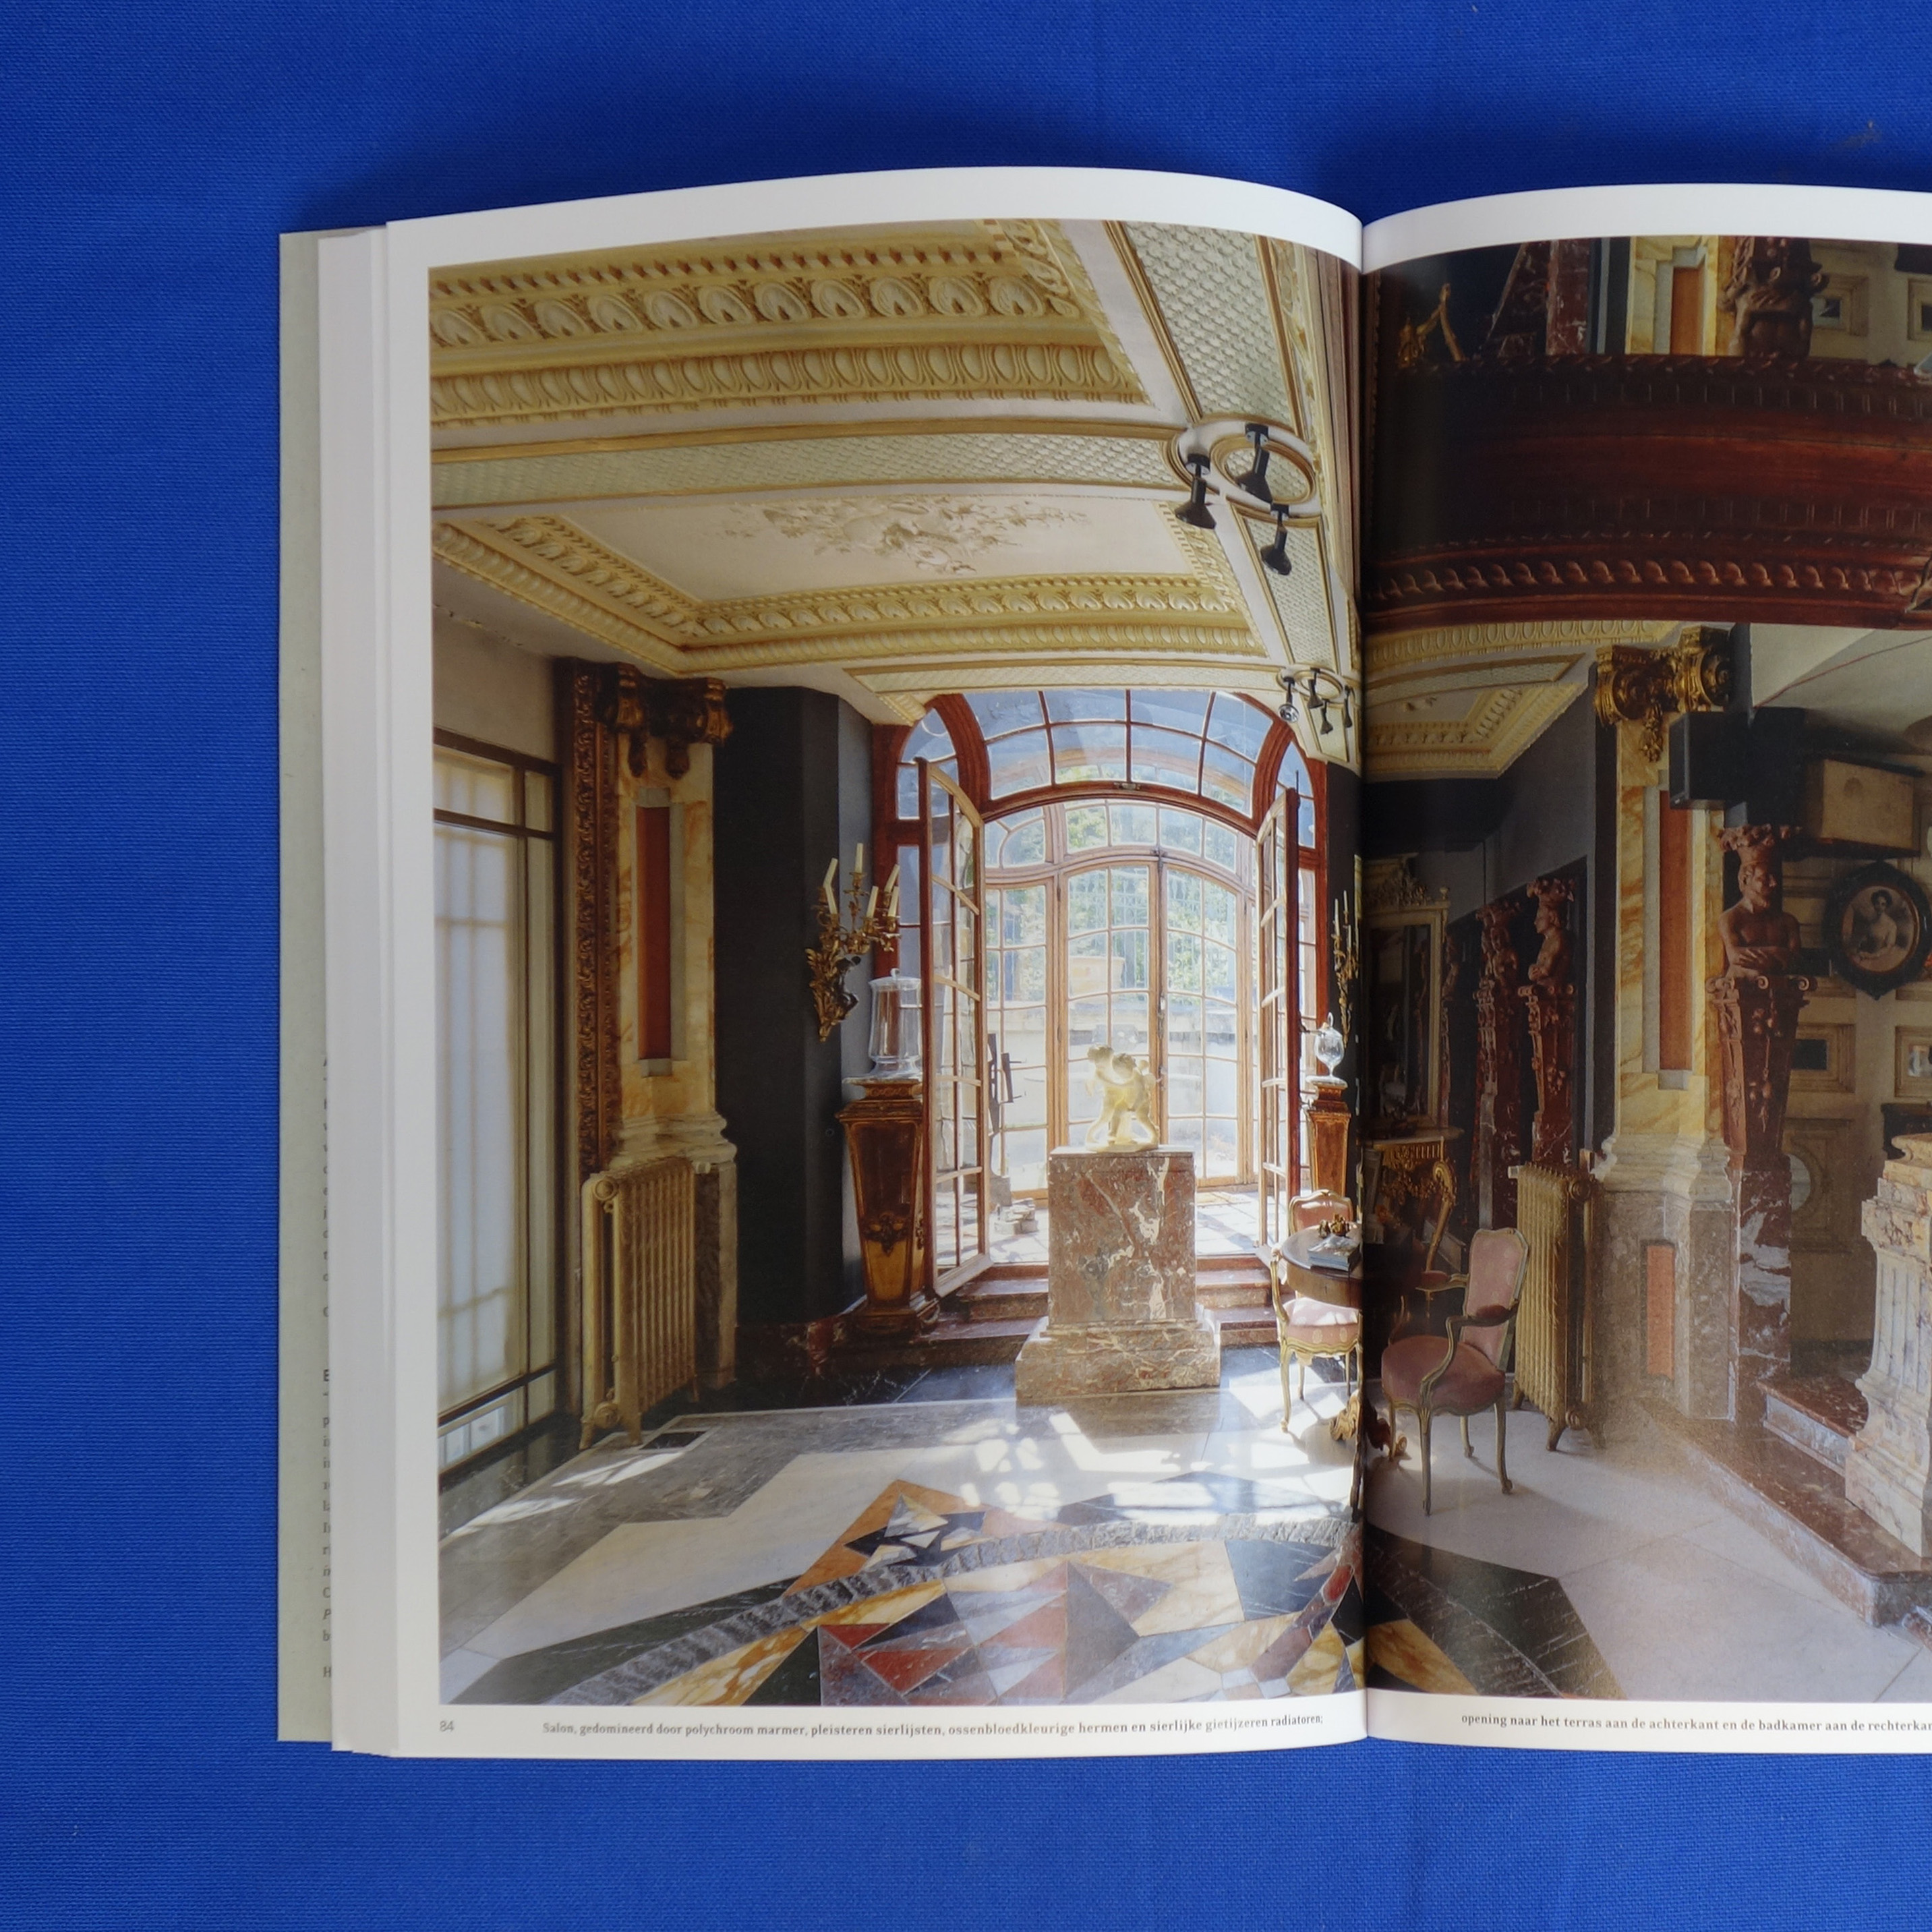 Book ‘Ad Hoc Baroque’ by A. Vande Capelle, S. Colon, L. Devlieger &amp; J. Westcott